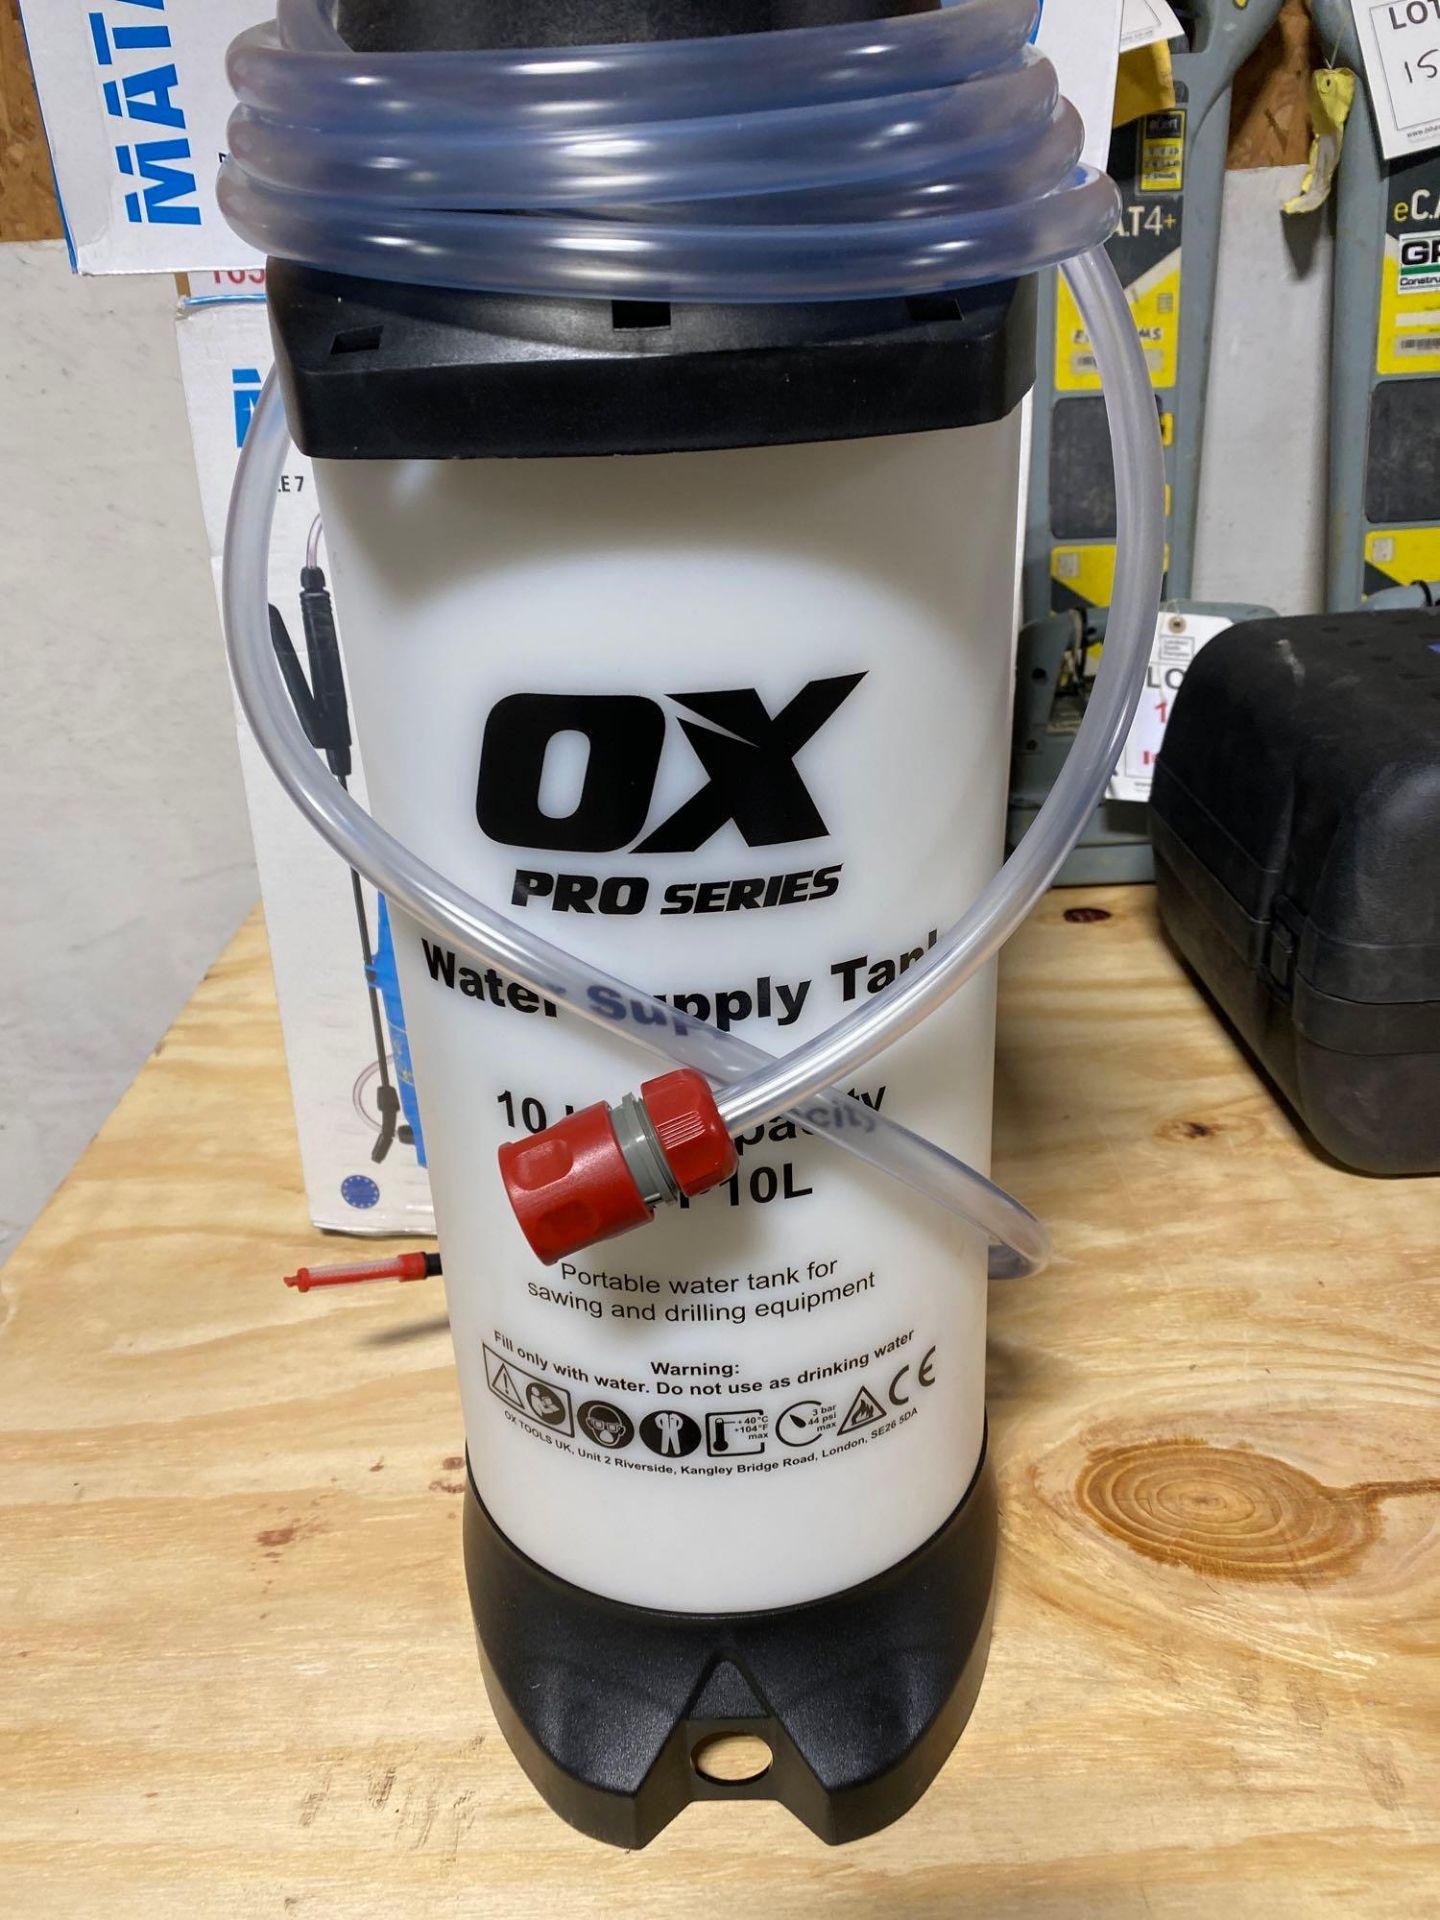 4 x OX pro series water supply tanks 10L